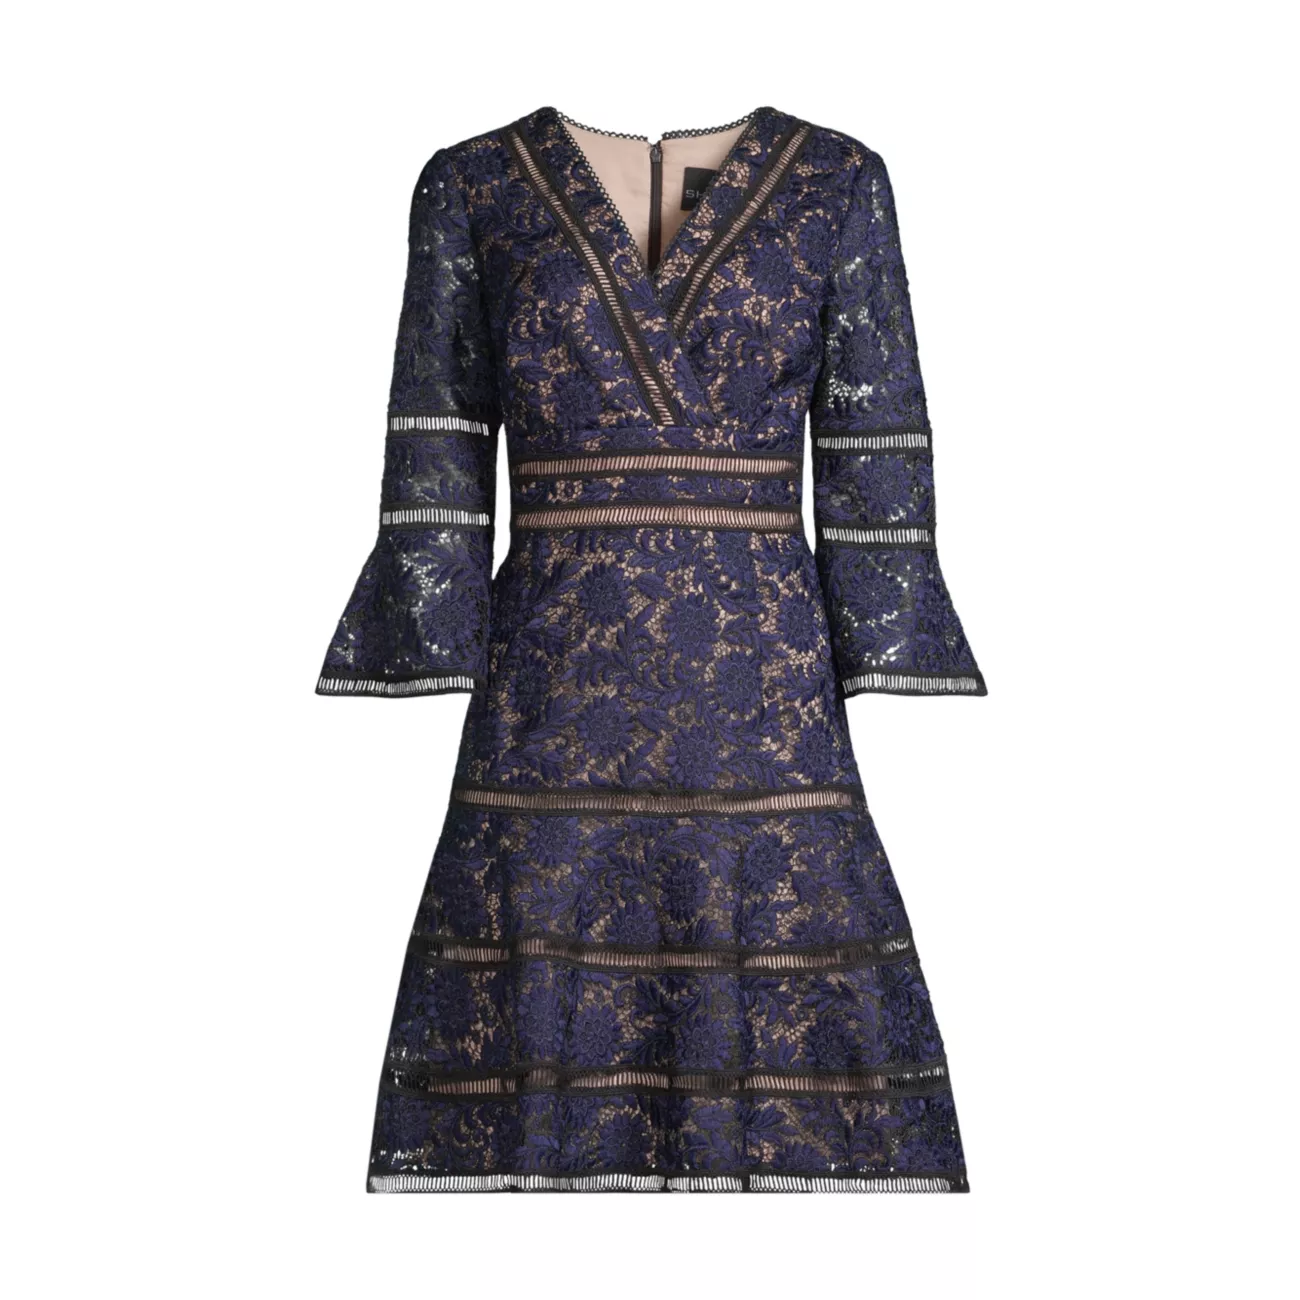 Жаккардовое платье трапециевидной формы с кружевной отделкой и цветочным принтом SHANI